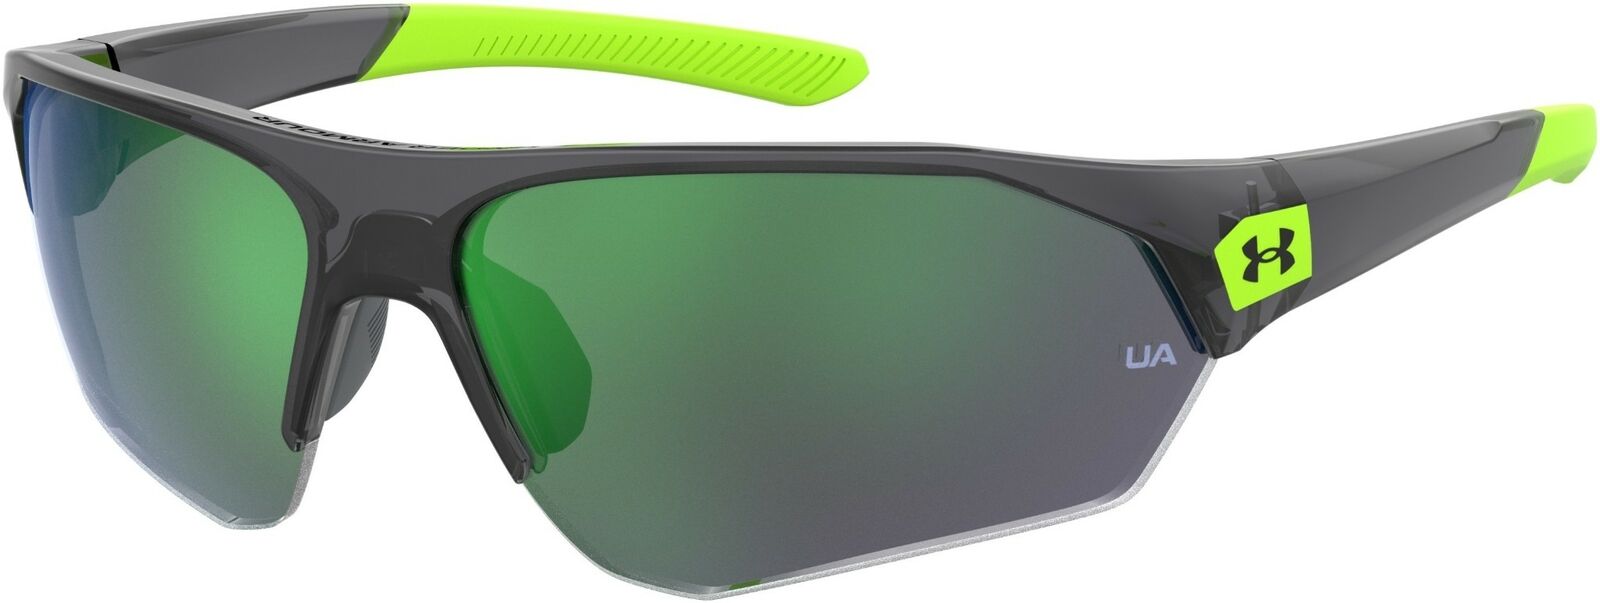 Under Armour Ua 7000/S 03U5/V8 Gray Green/Green Unisex Sunglasses